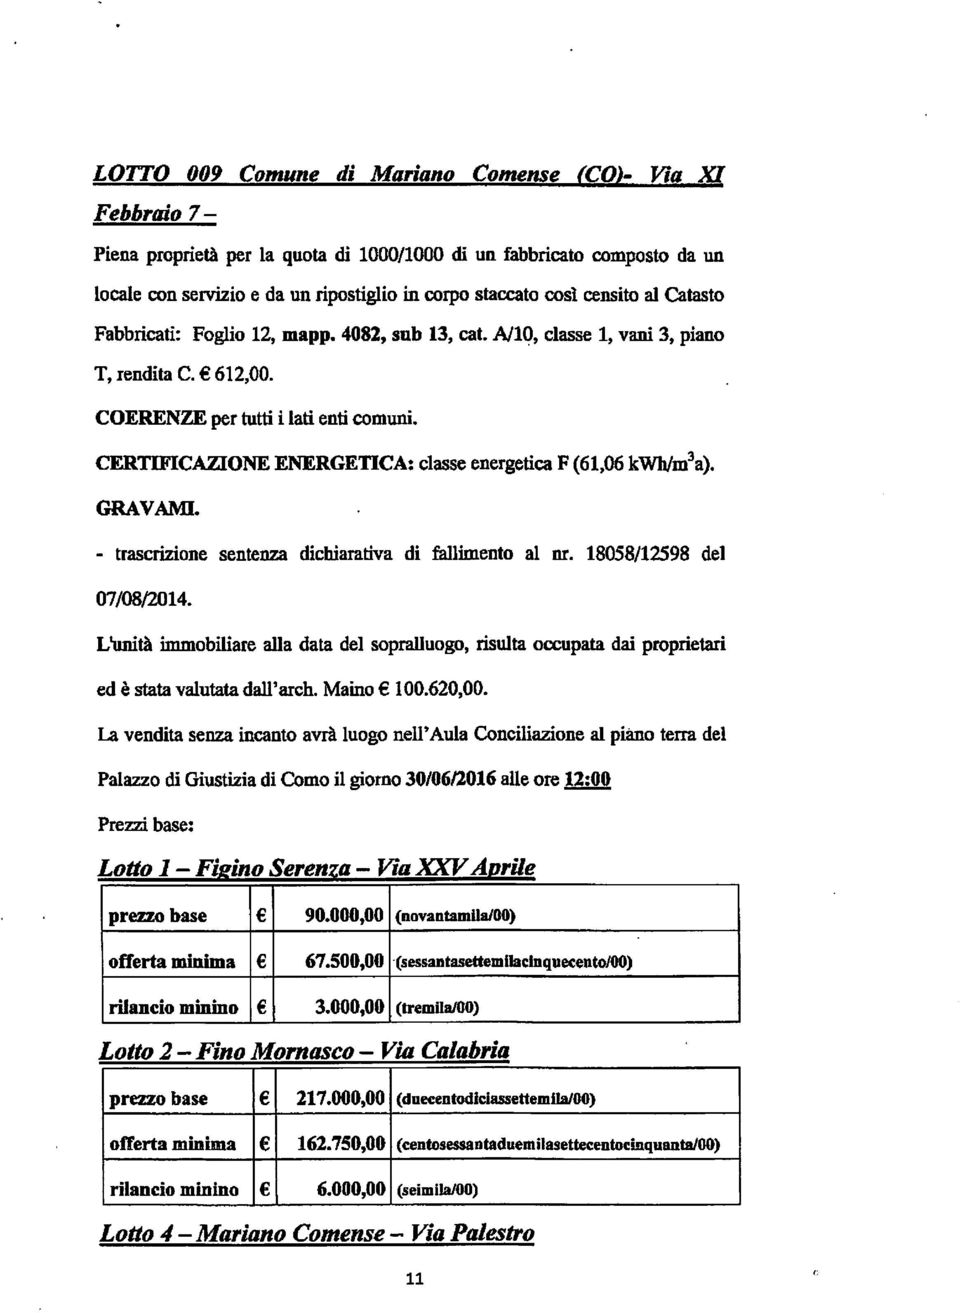 CERTIFICAZIONE ENERGETICA: classe energetica F(61,06 kwh/m^a). GRAVAMI. - trascrizione sentenza dichiarativa di fallimento al nr. 18058/12598 del 07/08/2014.